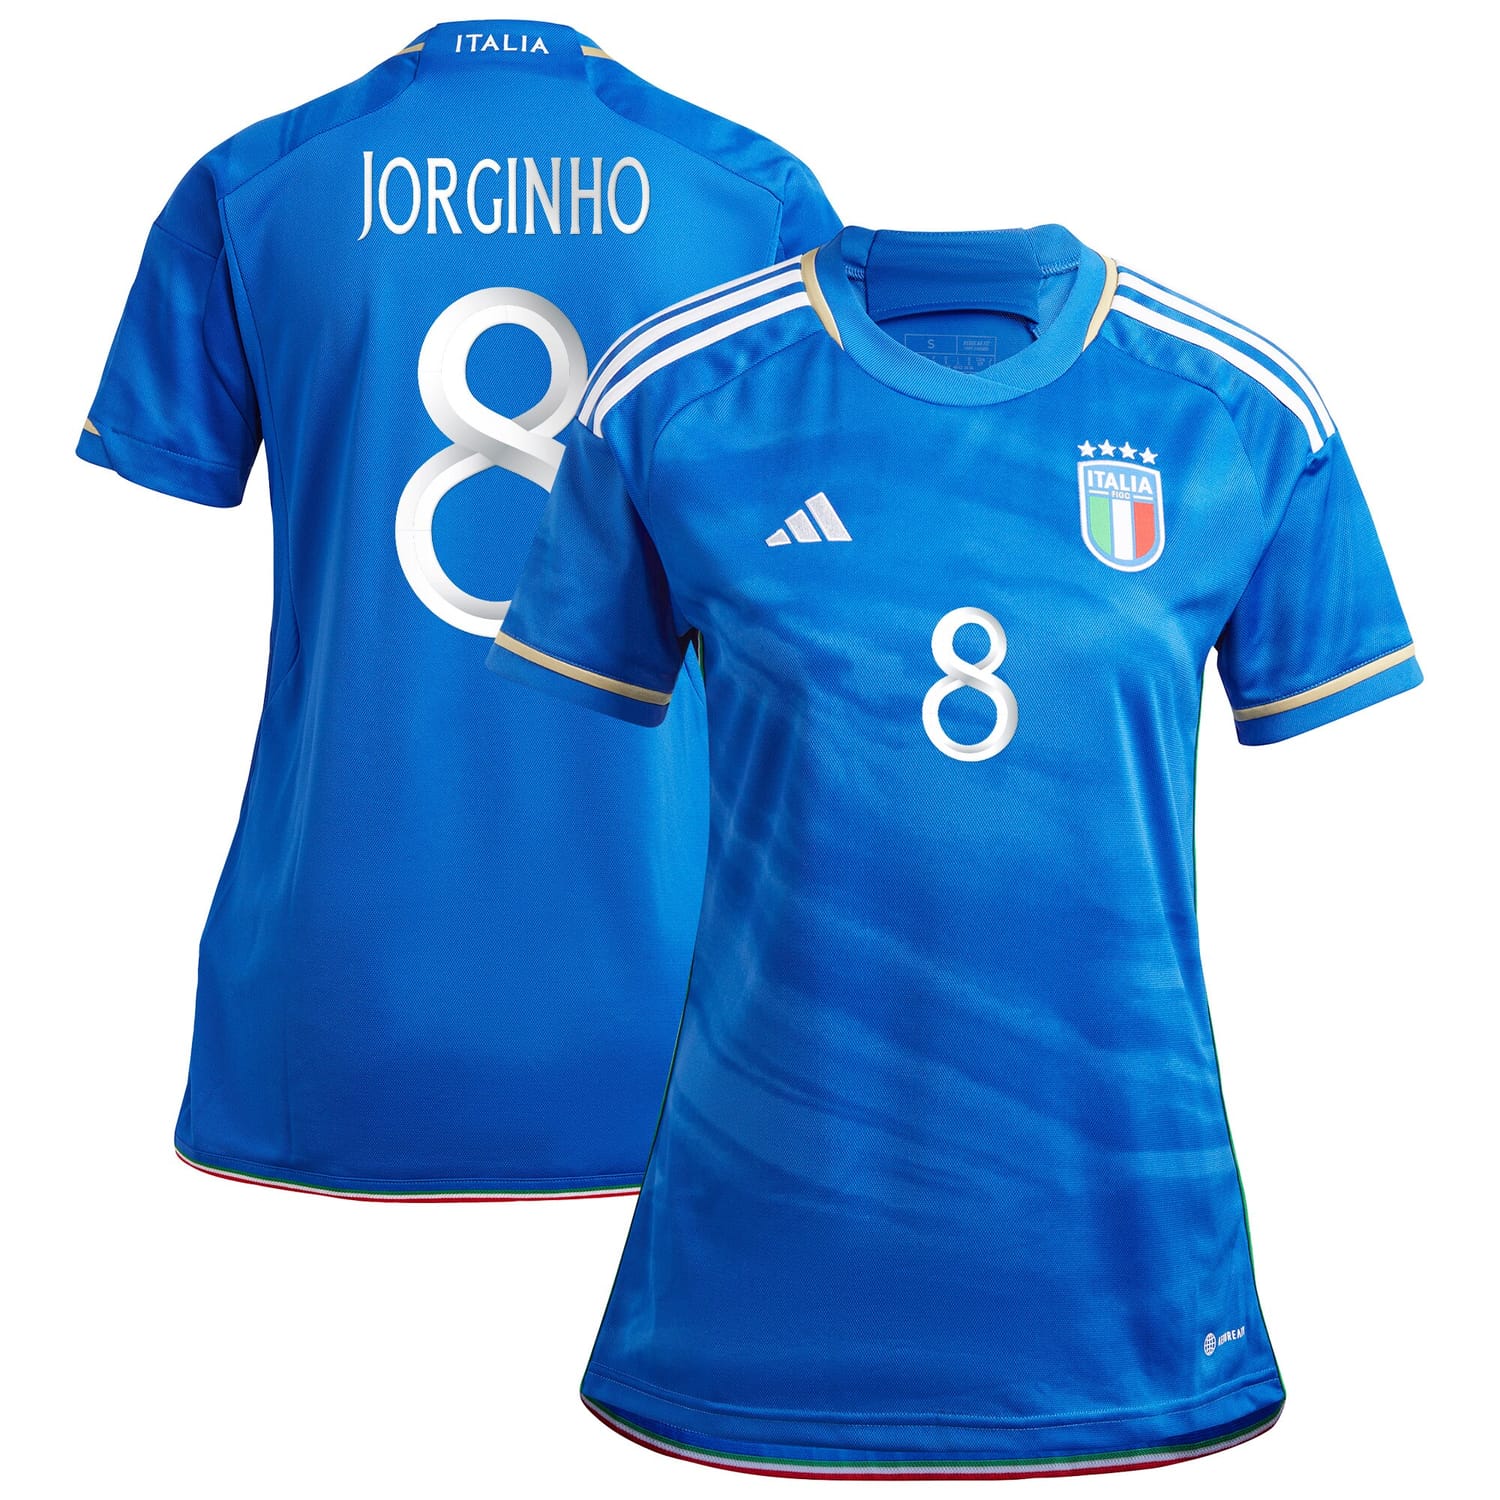 Italy National Team Home Jersey Shirt Blue 2023 player Jorginho printing for Women